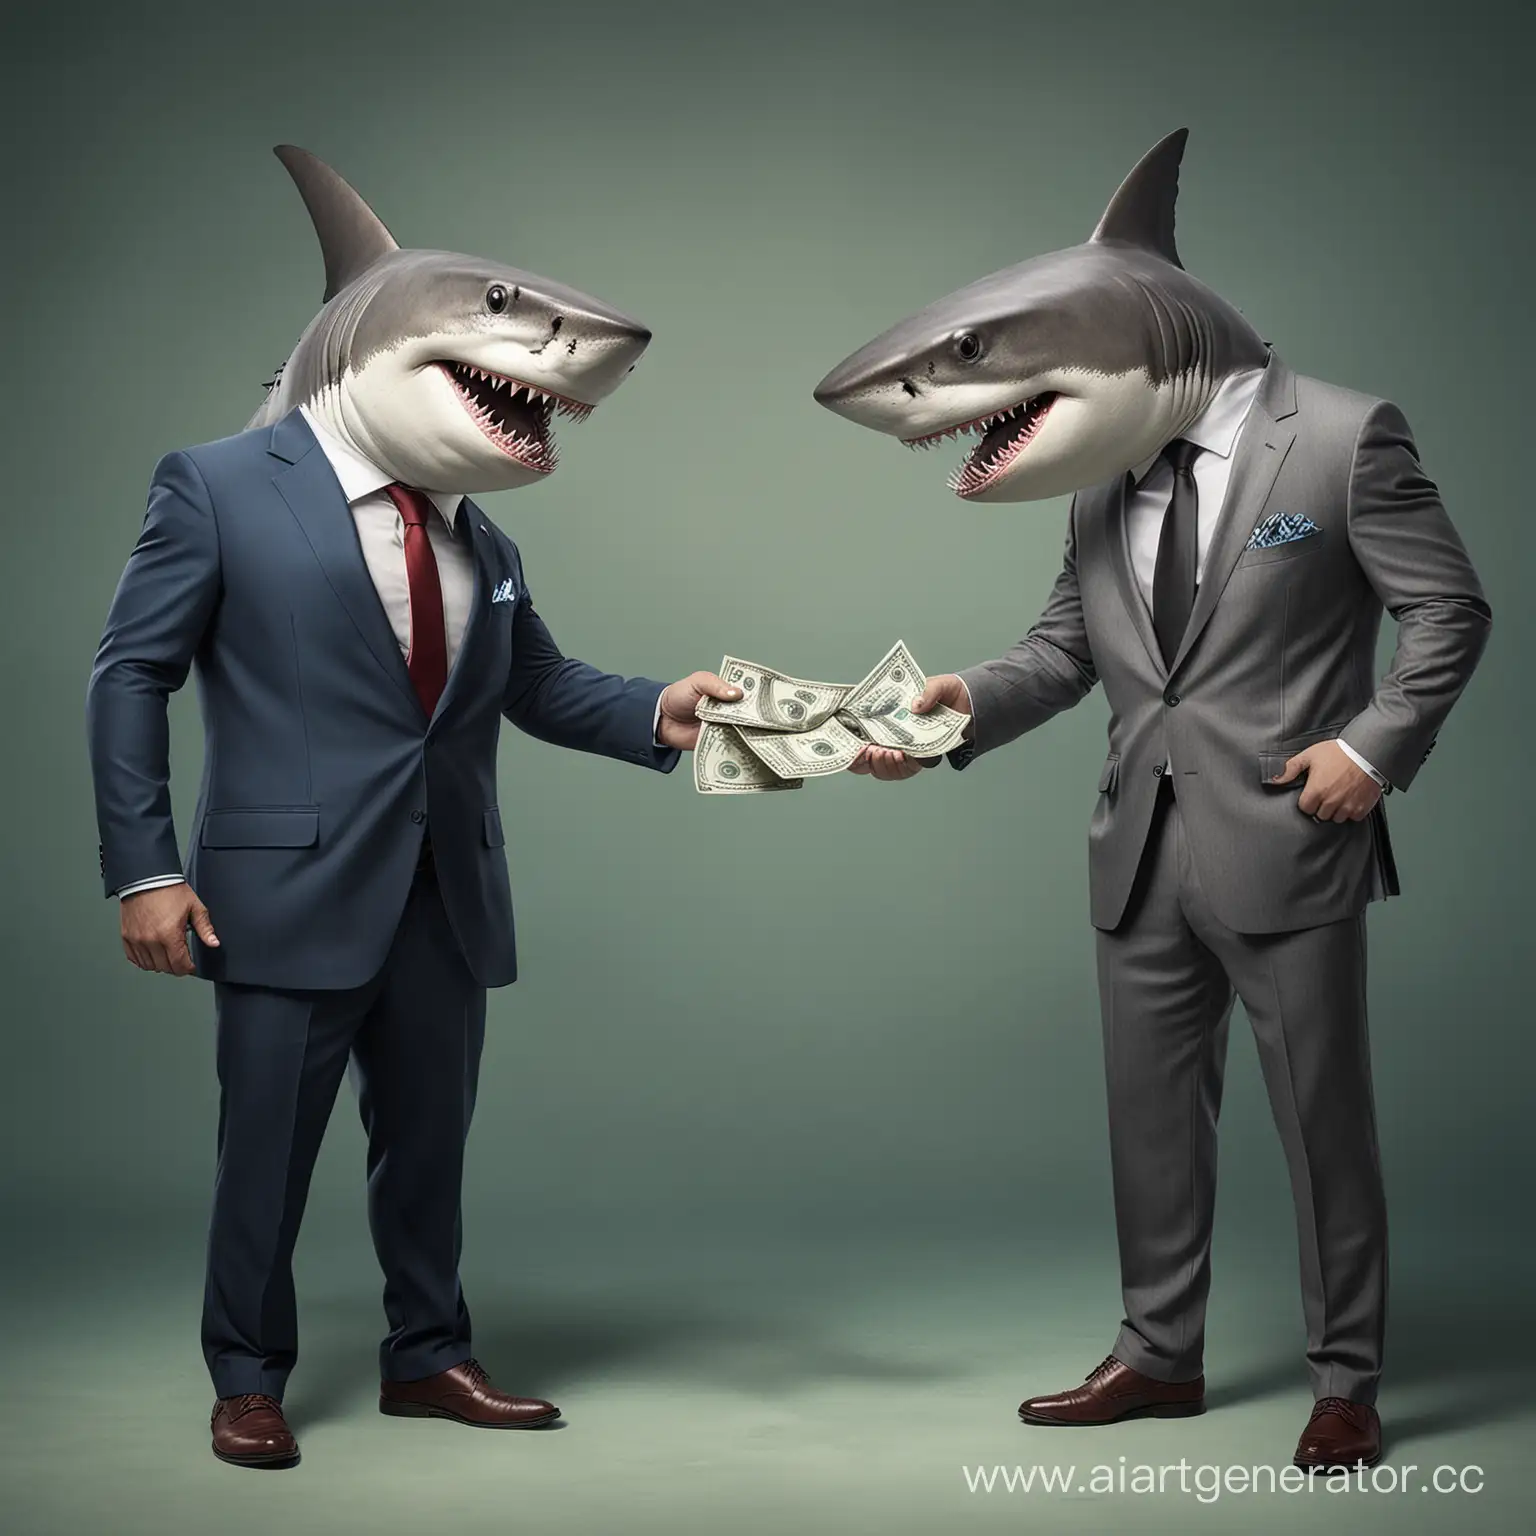 акулы в костюмах обмениваются деньгами